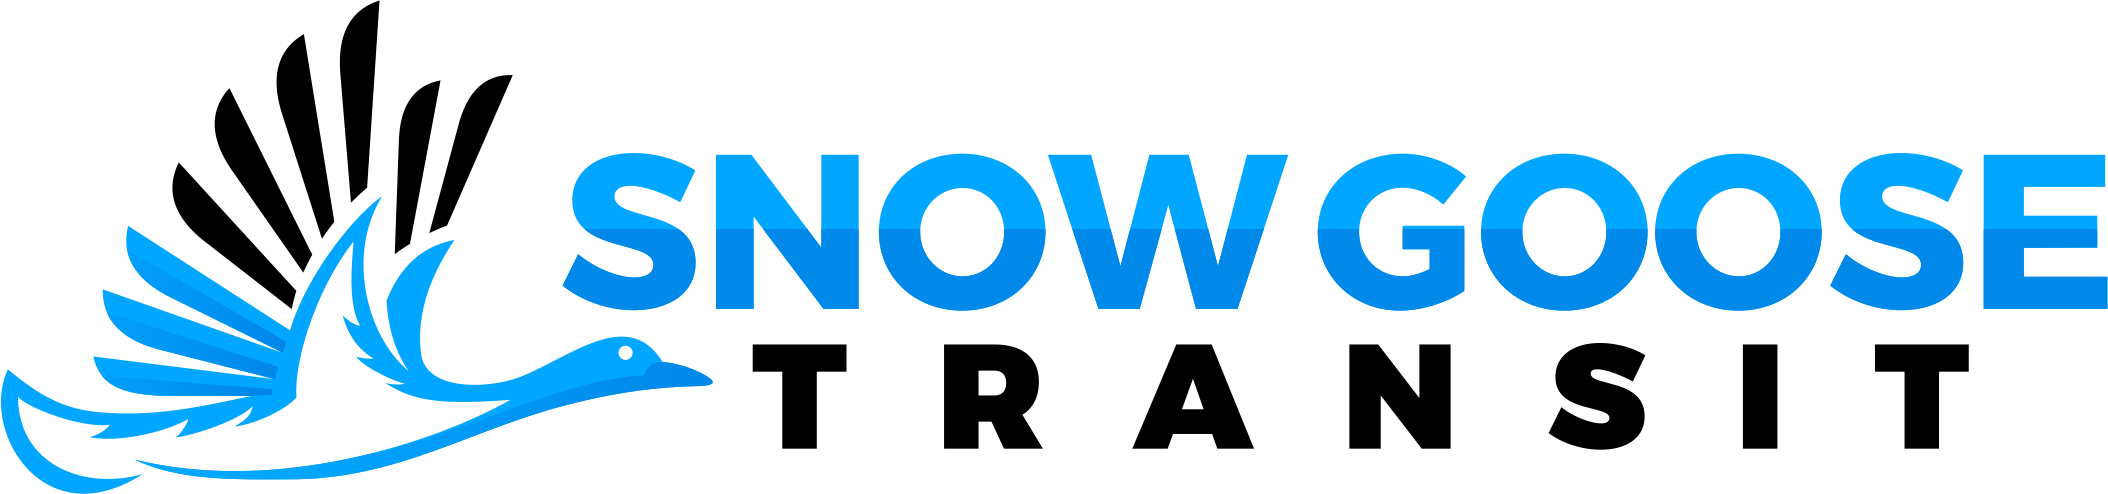 Snowgoose Transit Logo